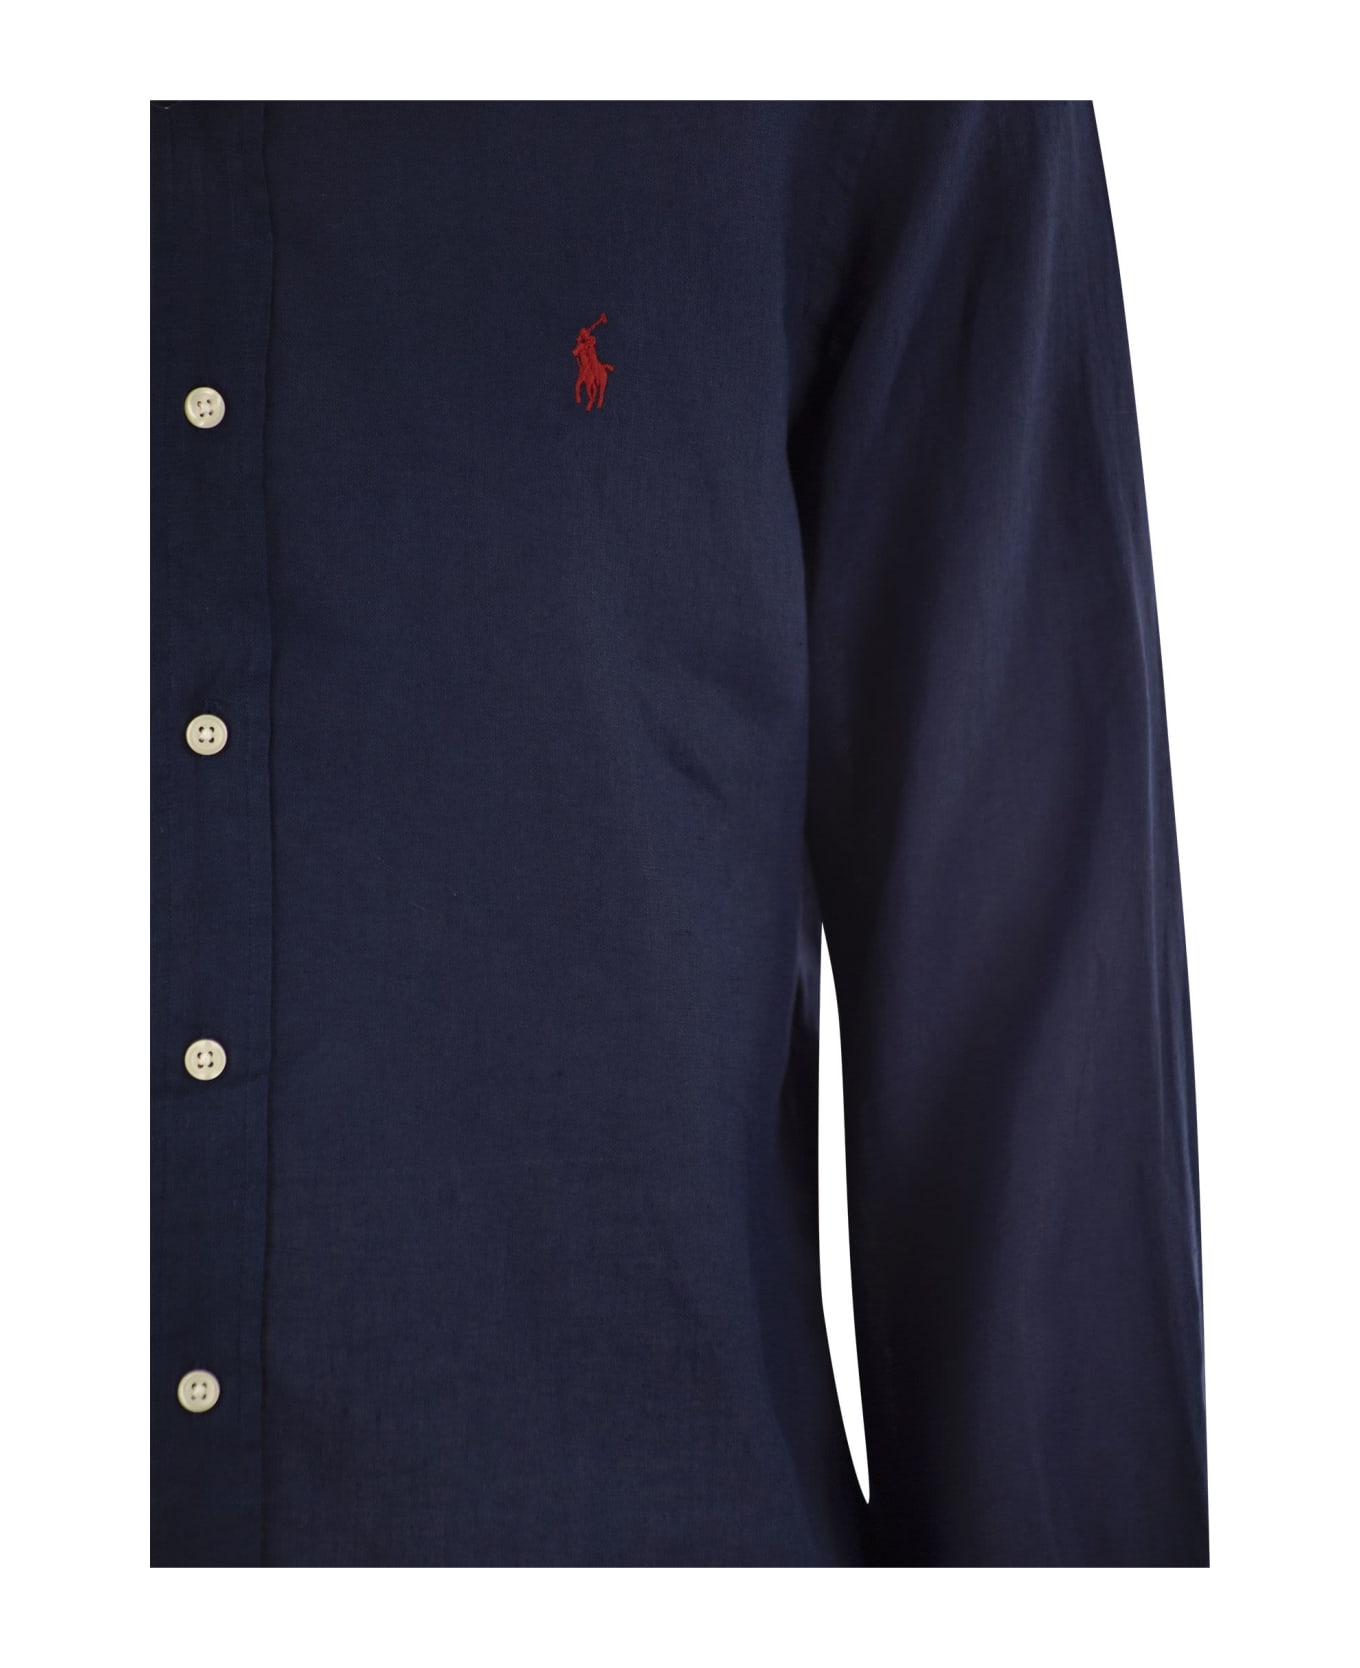 Polo Ralph Lauren Classic Long Sleeve Shirt - Navy Blue シャツ